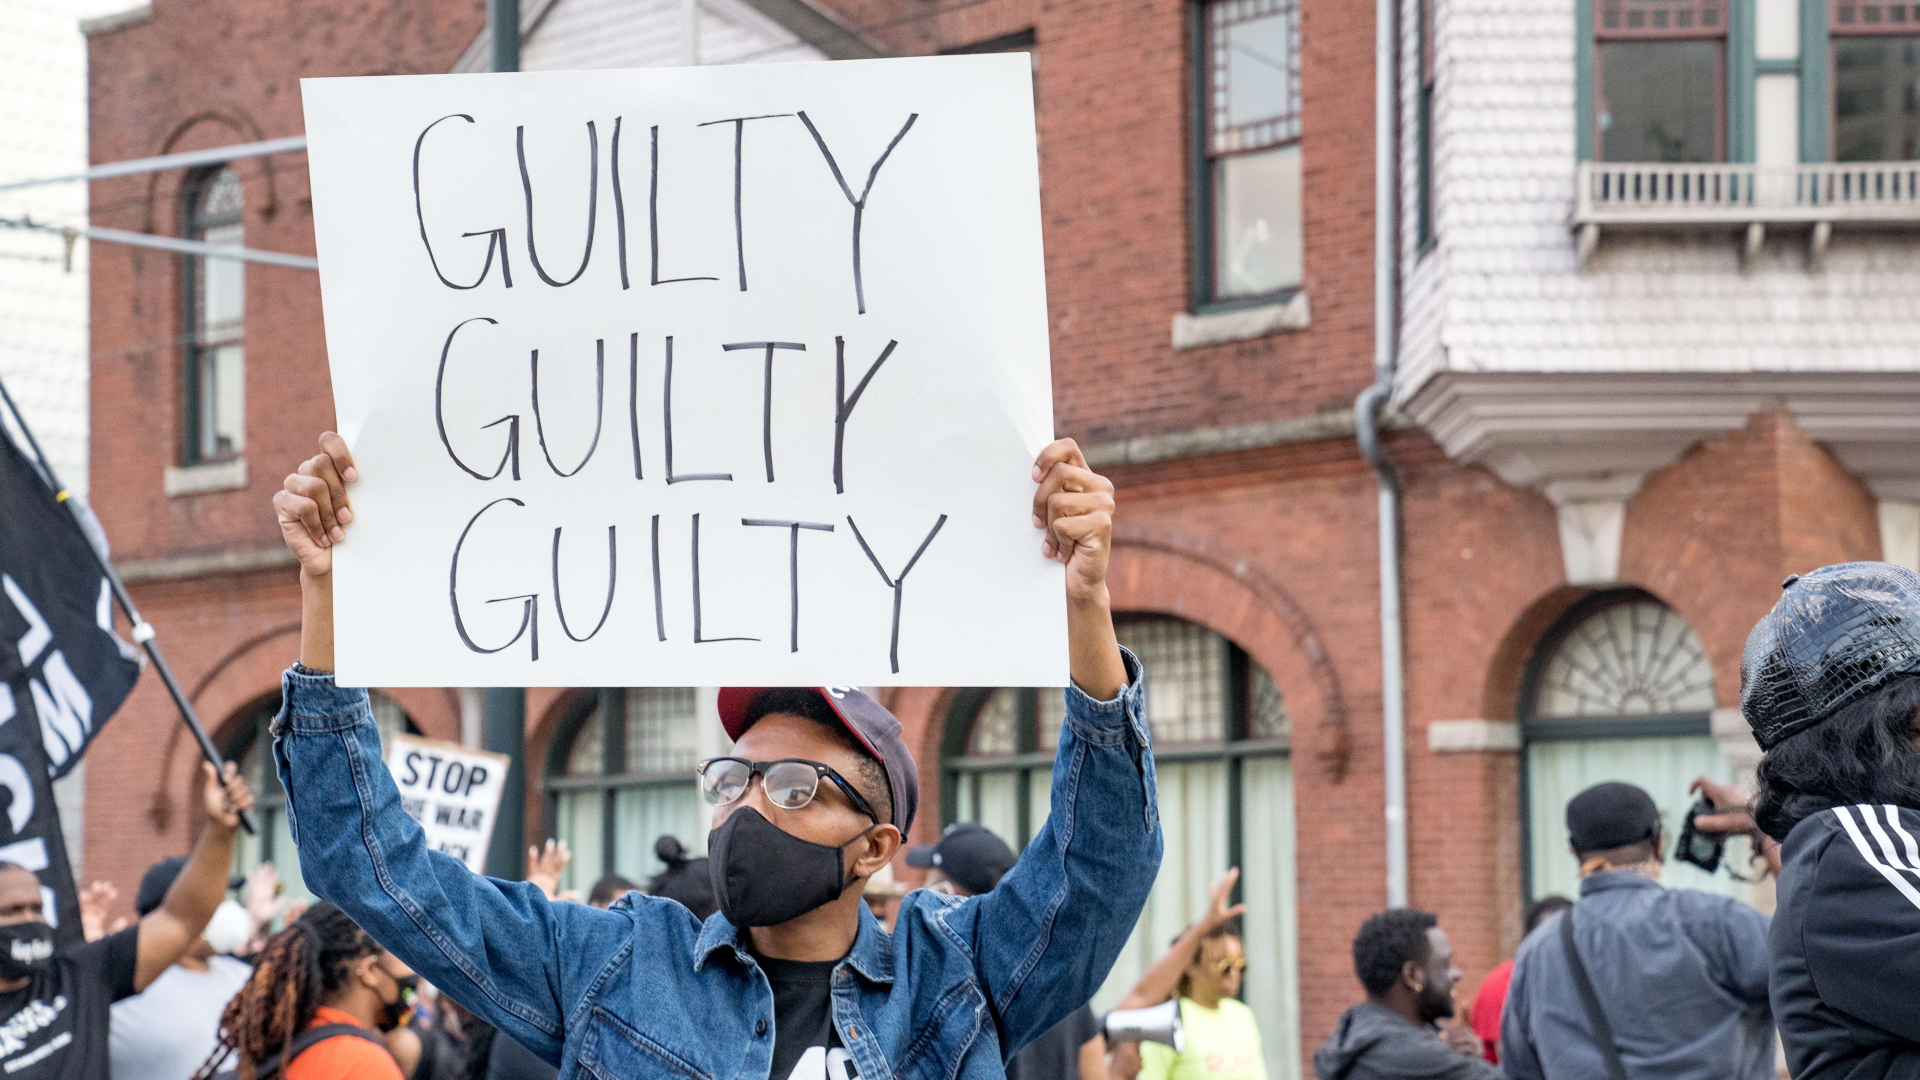 Ein Demonstrant in Atlanta hält ein Schild mit der Aufschrift "guilty, guilty, guilty" (schuldig, schuldig, schuldig) in die Höhe.